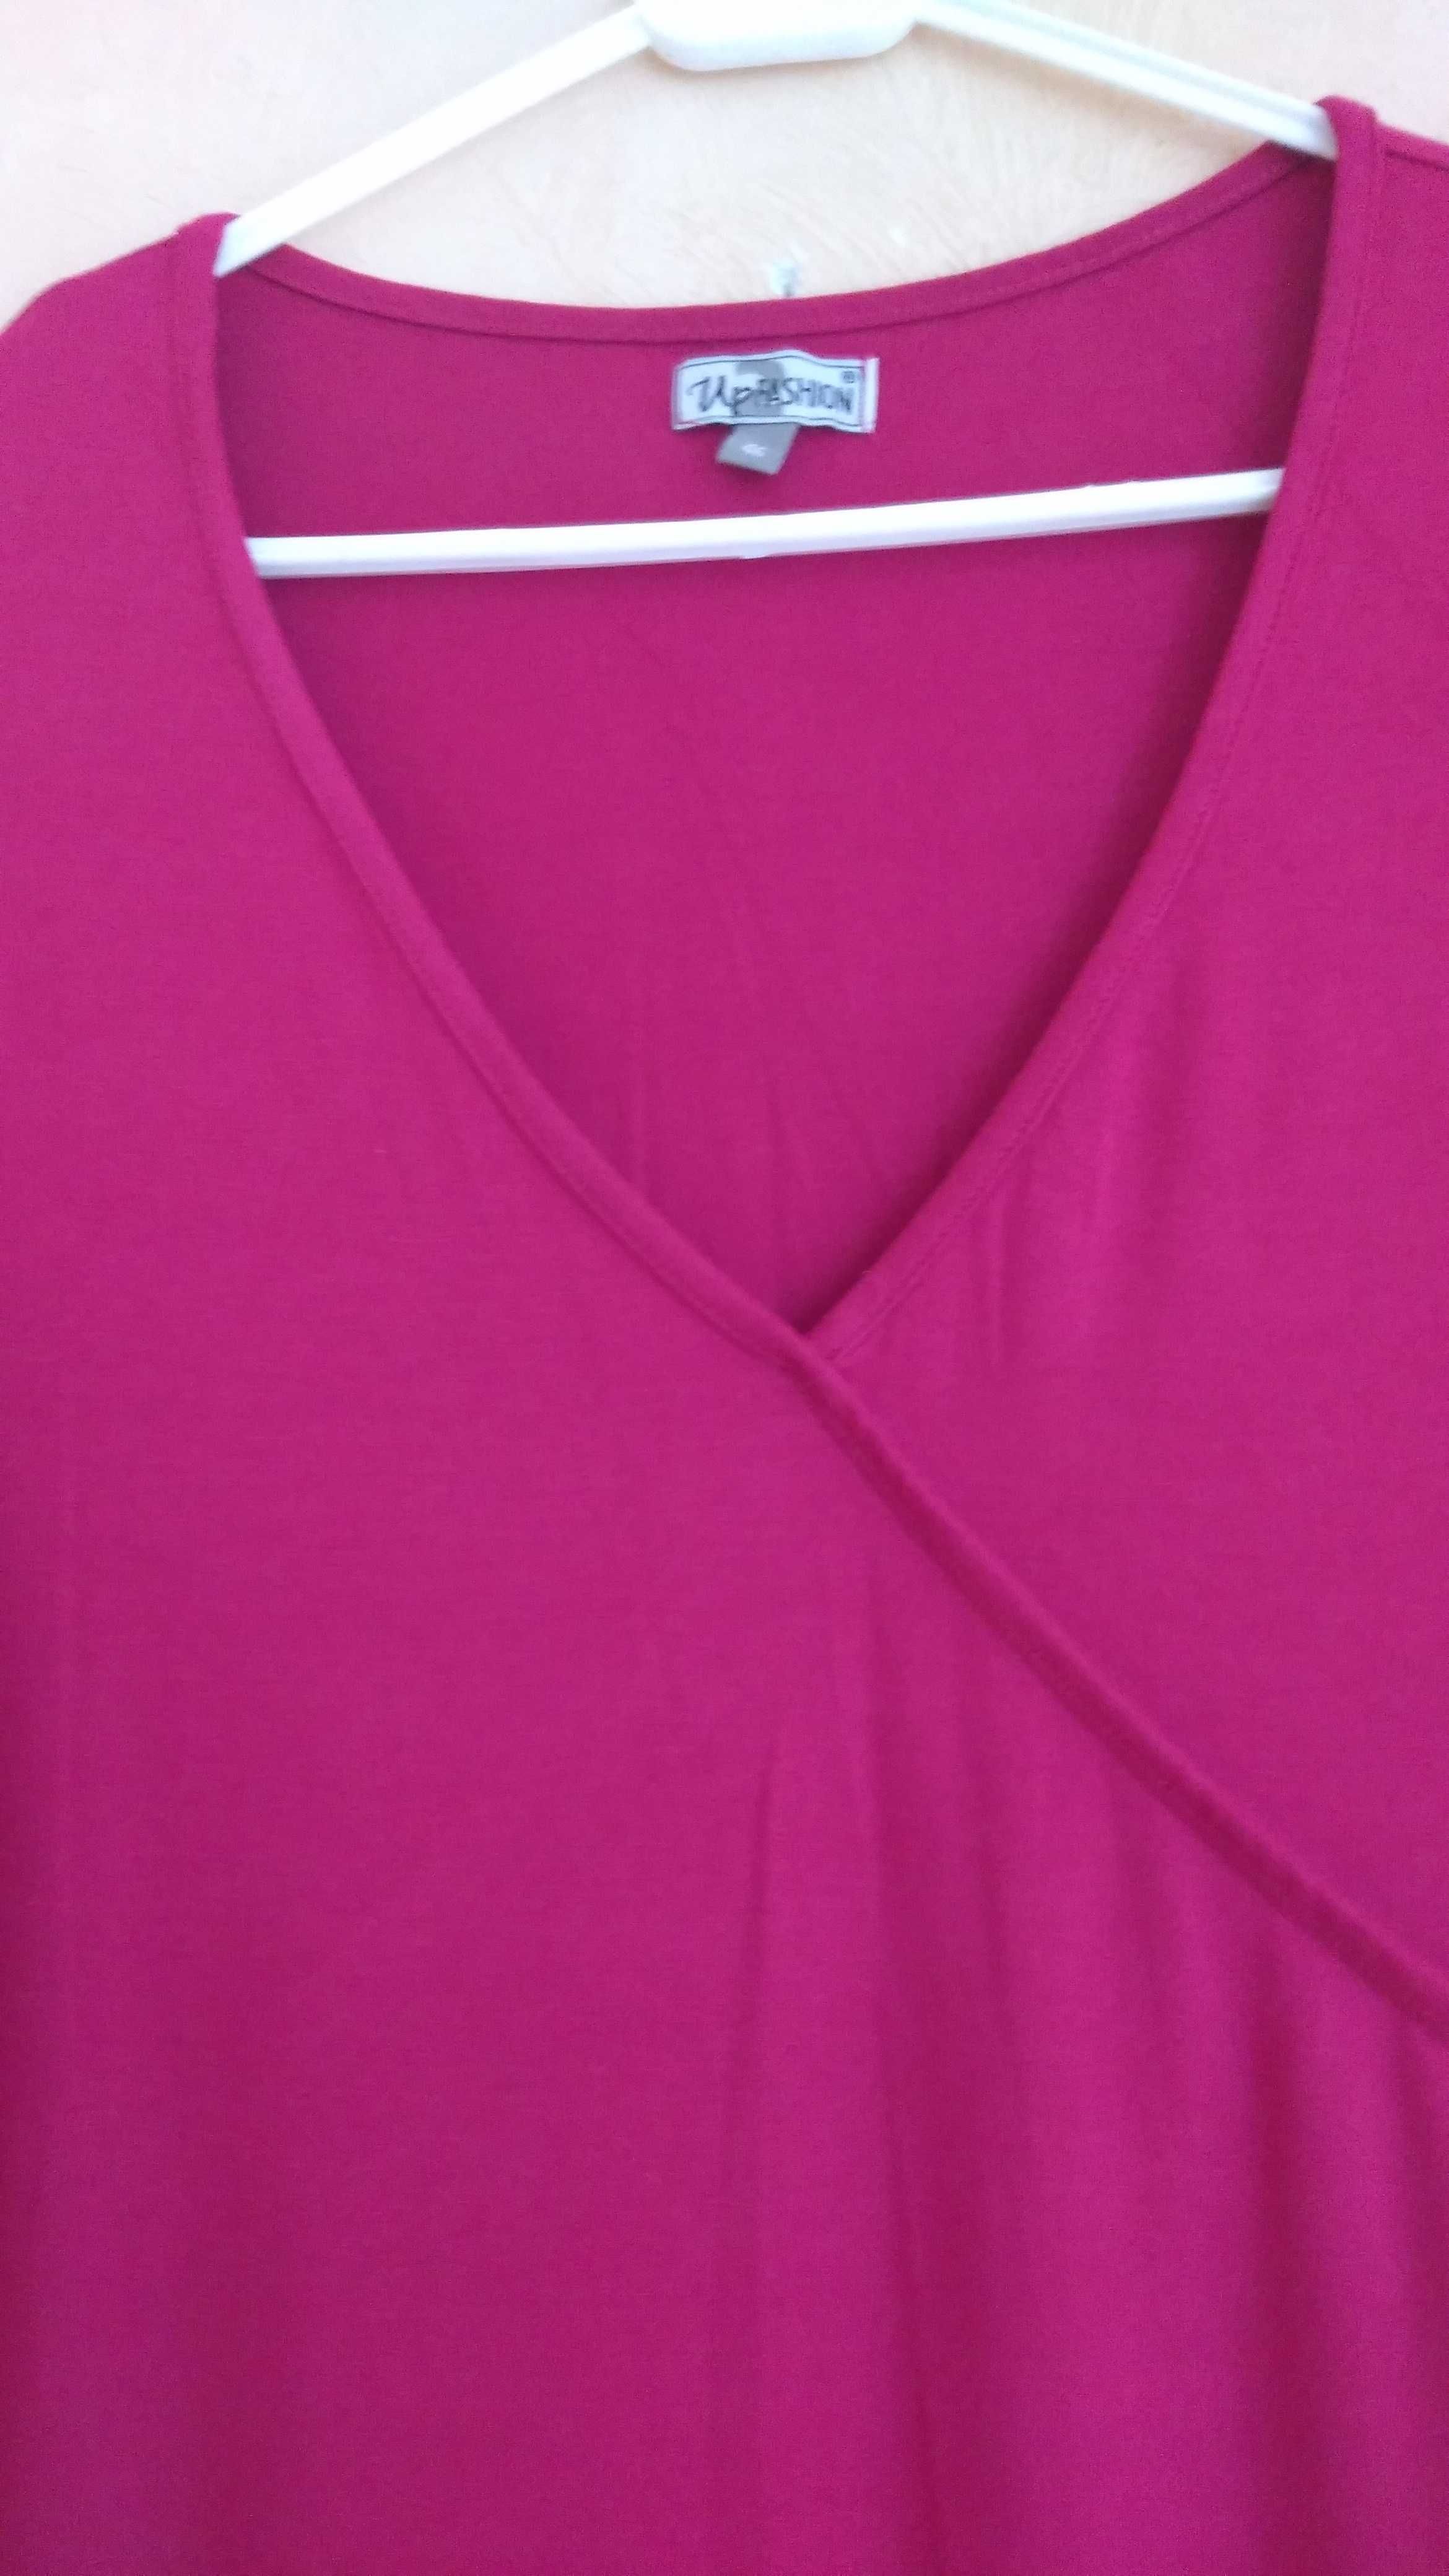 Платье трикотажное для беременной евро 46 Цвет фуксия. Индия.